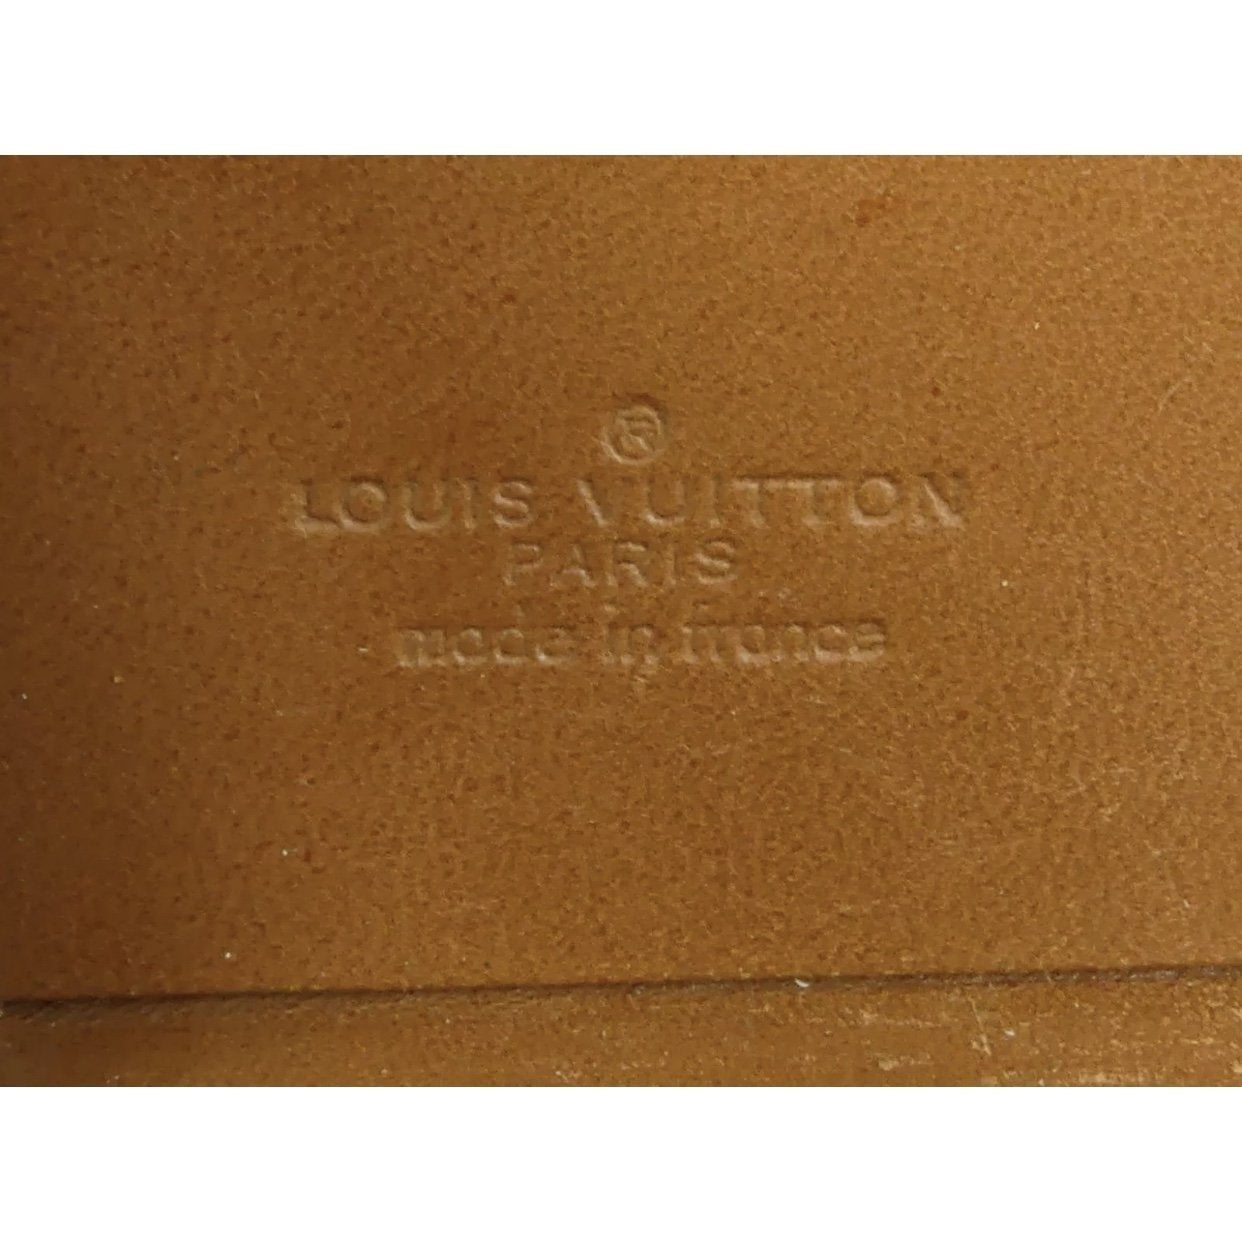 Sold at Auction: 1930's Louis Vuitton Monogram PrÃ©sident Briefcase